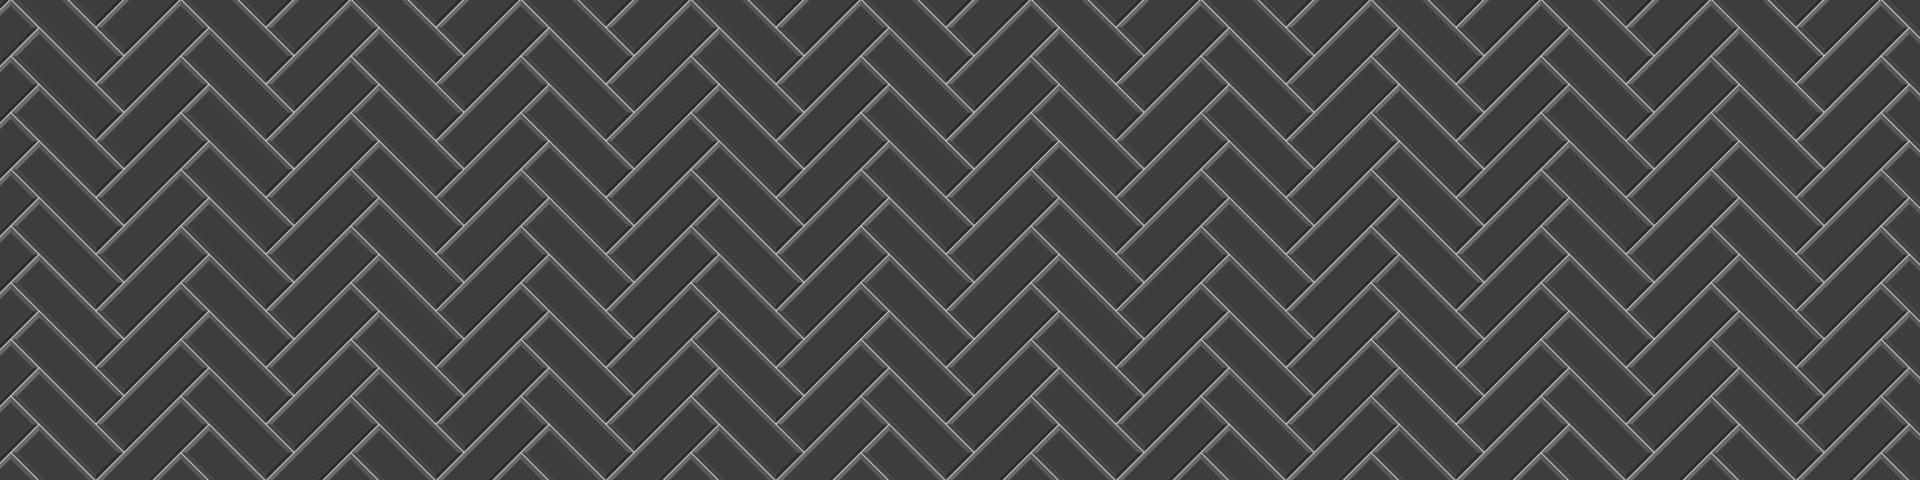 nahtloses Muster der schwarzen U-Bahn-Fliese mit Fischgrätenmuster. u-bahn stein oder keramikmauer hintergrund. küchenrückwand oder badezimmerbodenstruktur vektor